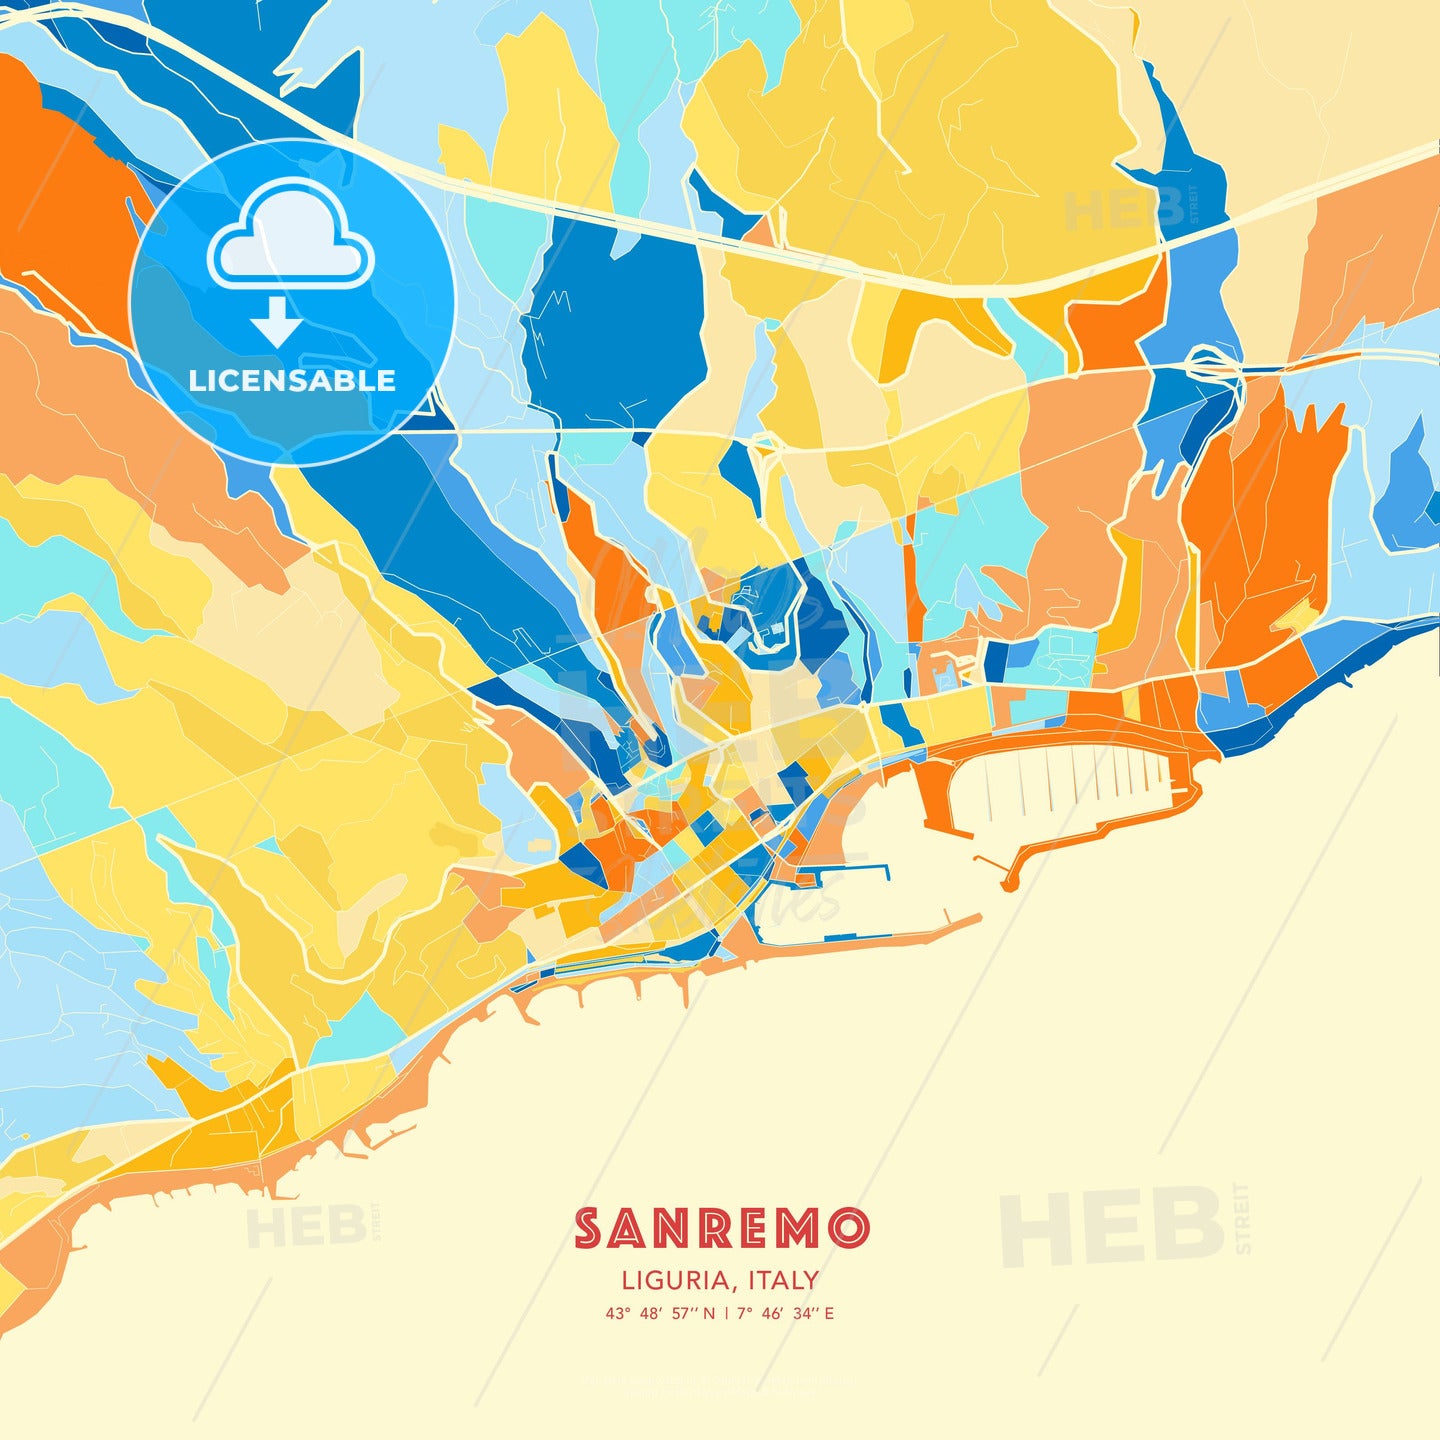 Sanremo, Liguria, Italy, map - HEBSTREITS Sketches